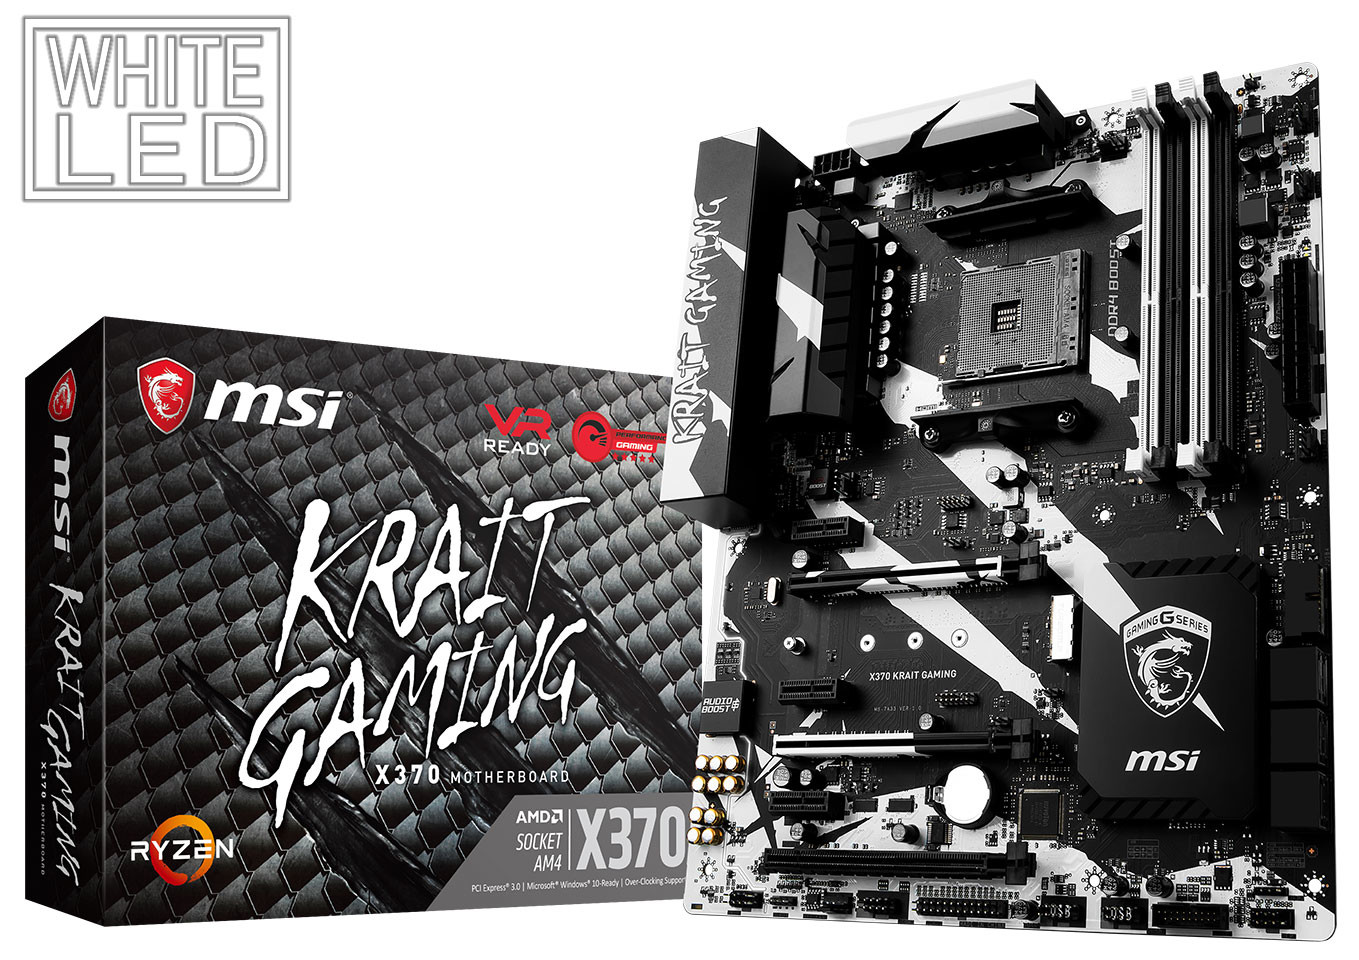 MSI Memperkenalkan Papan Induk X370 Krait Gaming Untuk CPU AMD Ryzen